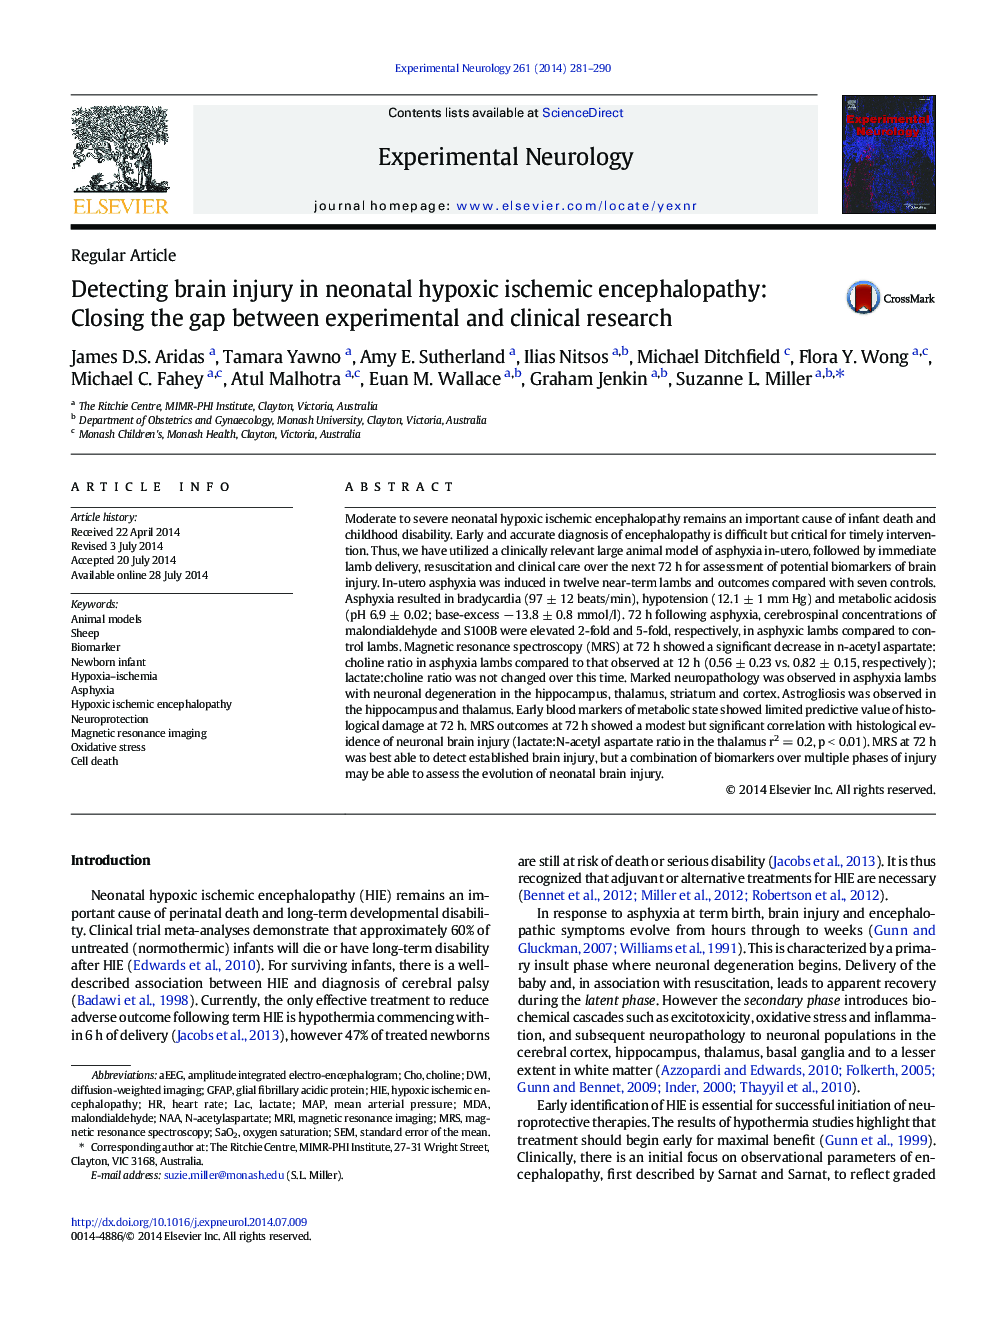 تشخیص آسیب مغزی در آنسفالوپاتی ایسکمی هیپوکسی نوزادان: تعویض شکاف بین تحقیقات بالینی و آزمایشگاهی 